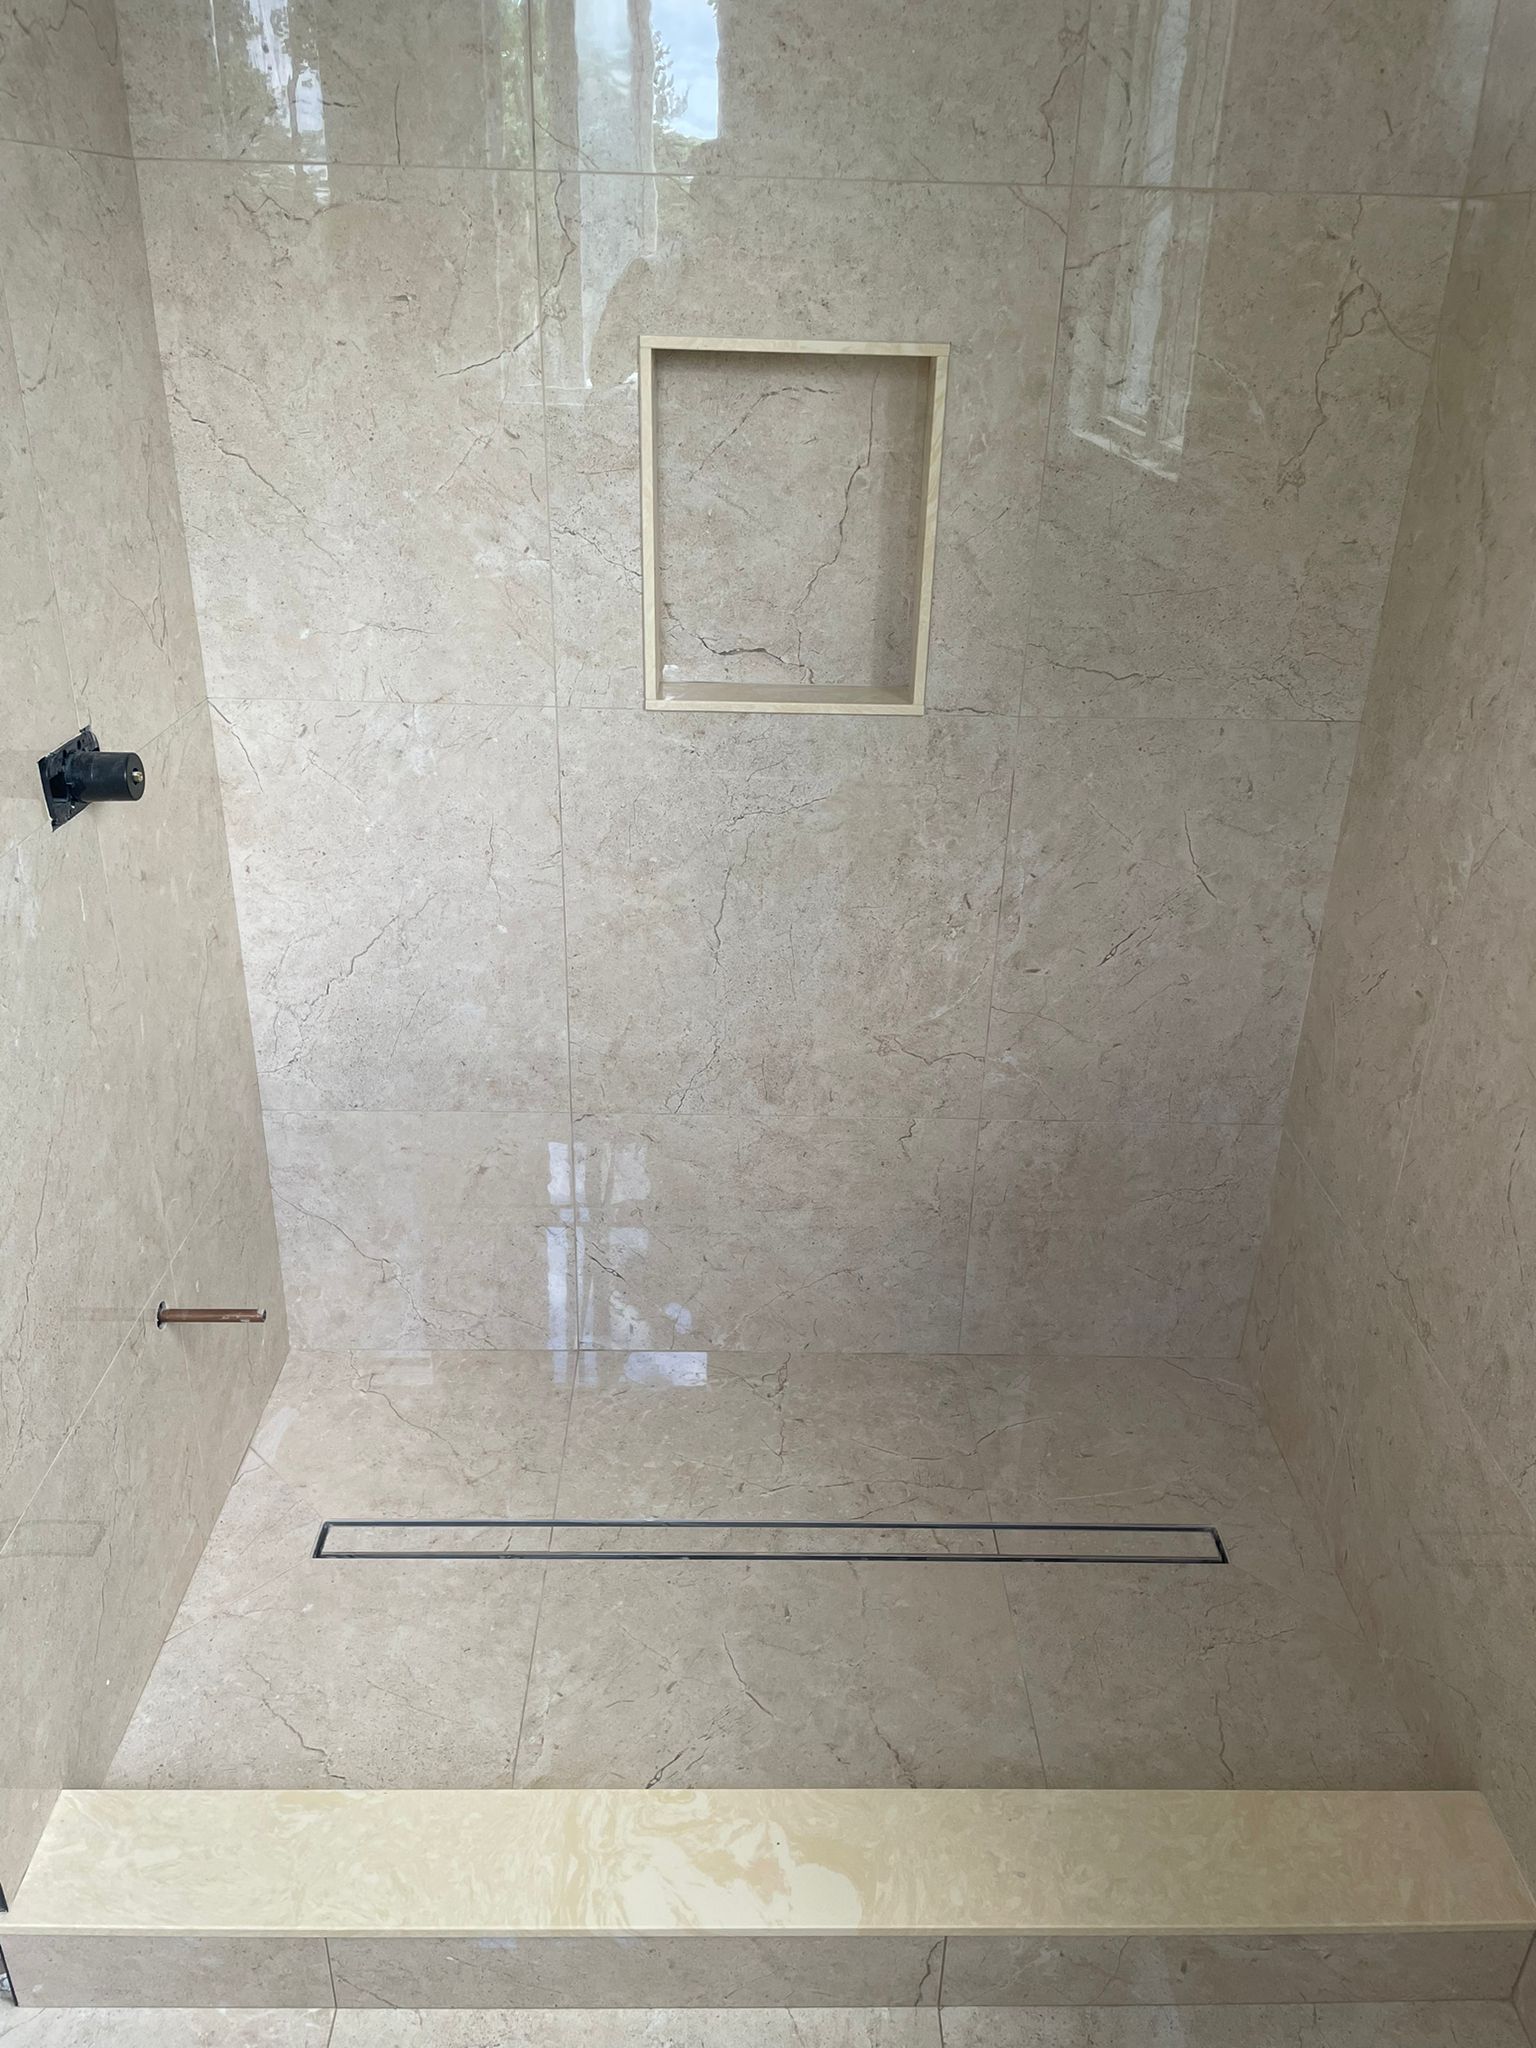 Ajax Bathroom tiles installation at Markom Tiles